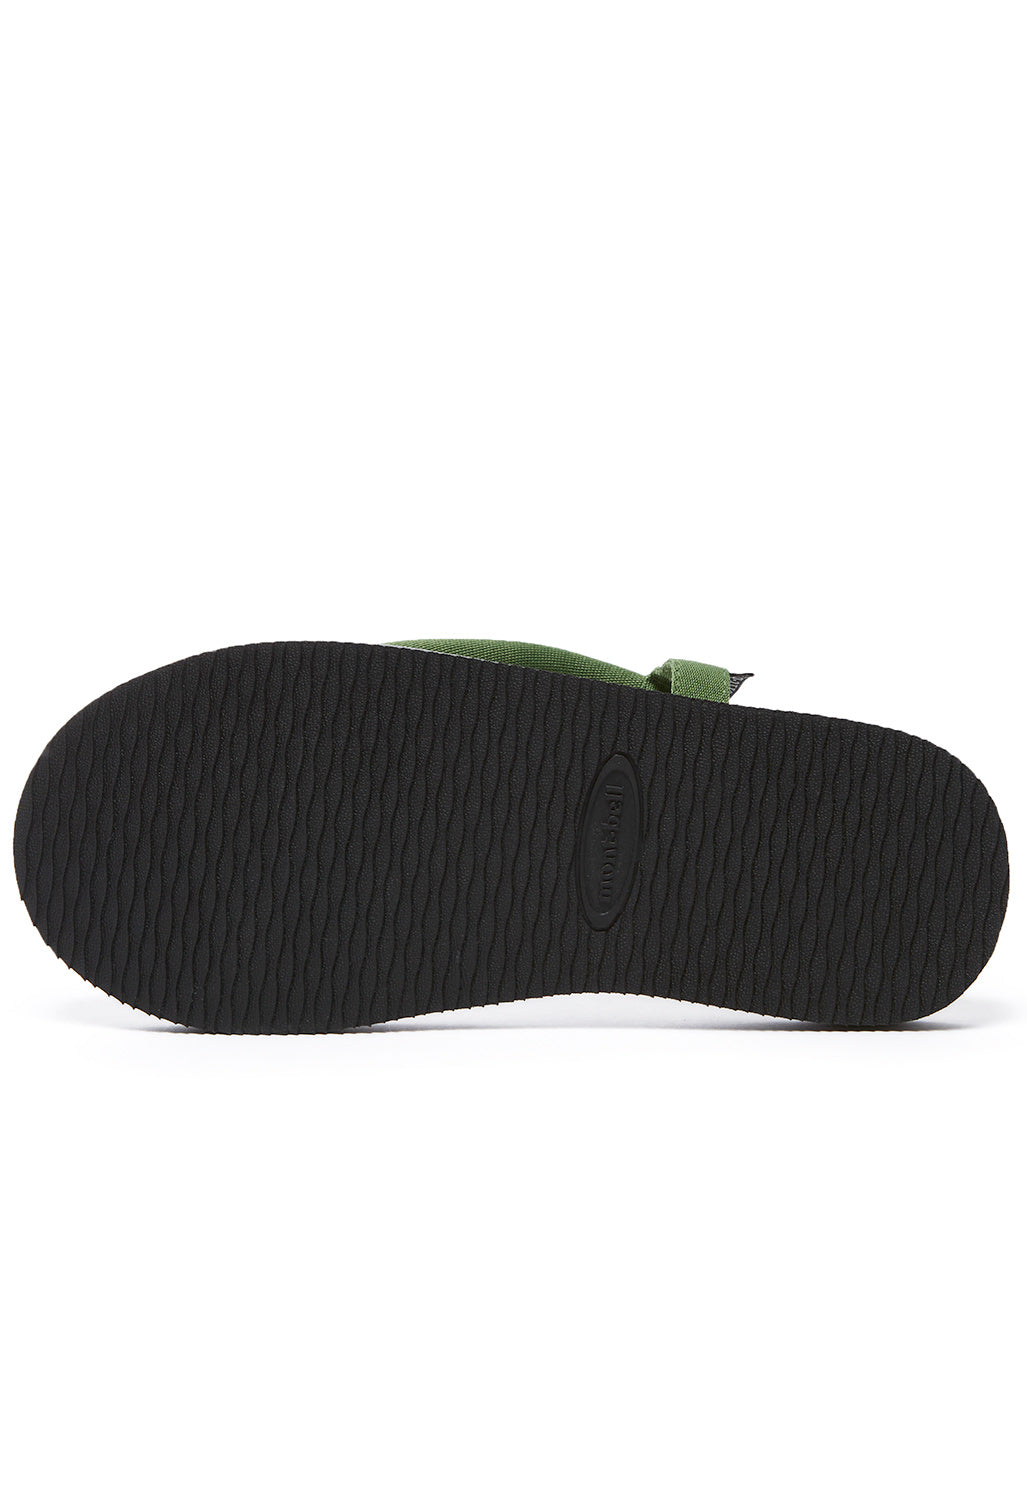 Montbell Sock-On Sandals - Grey/Leaf Green